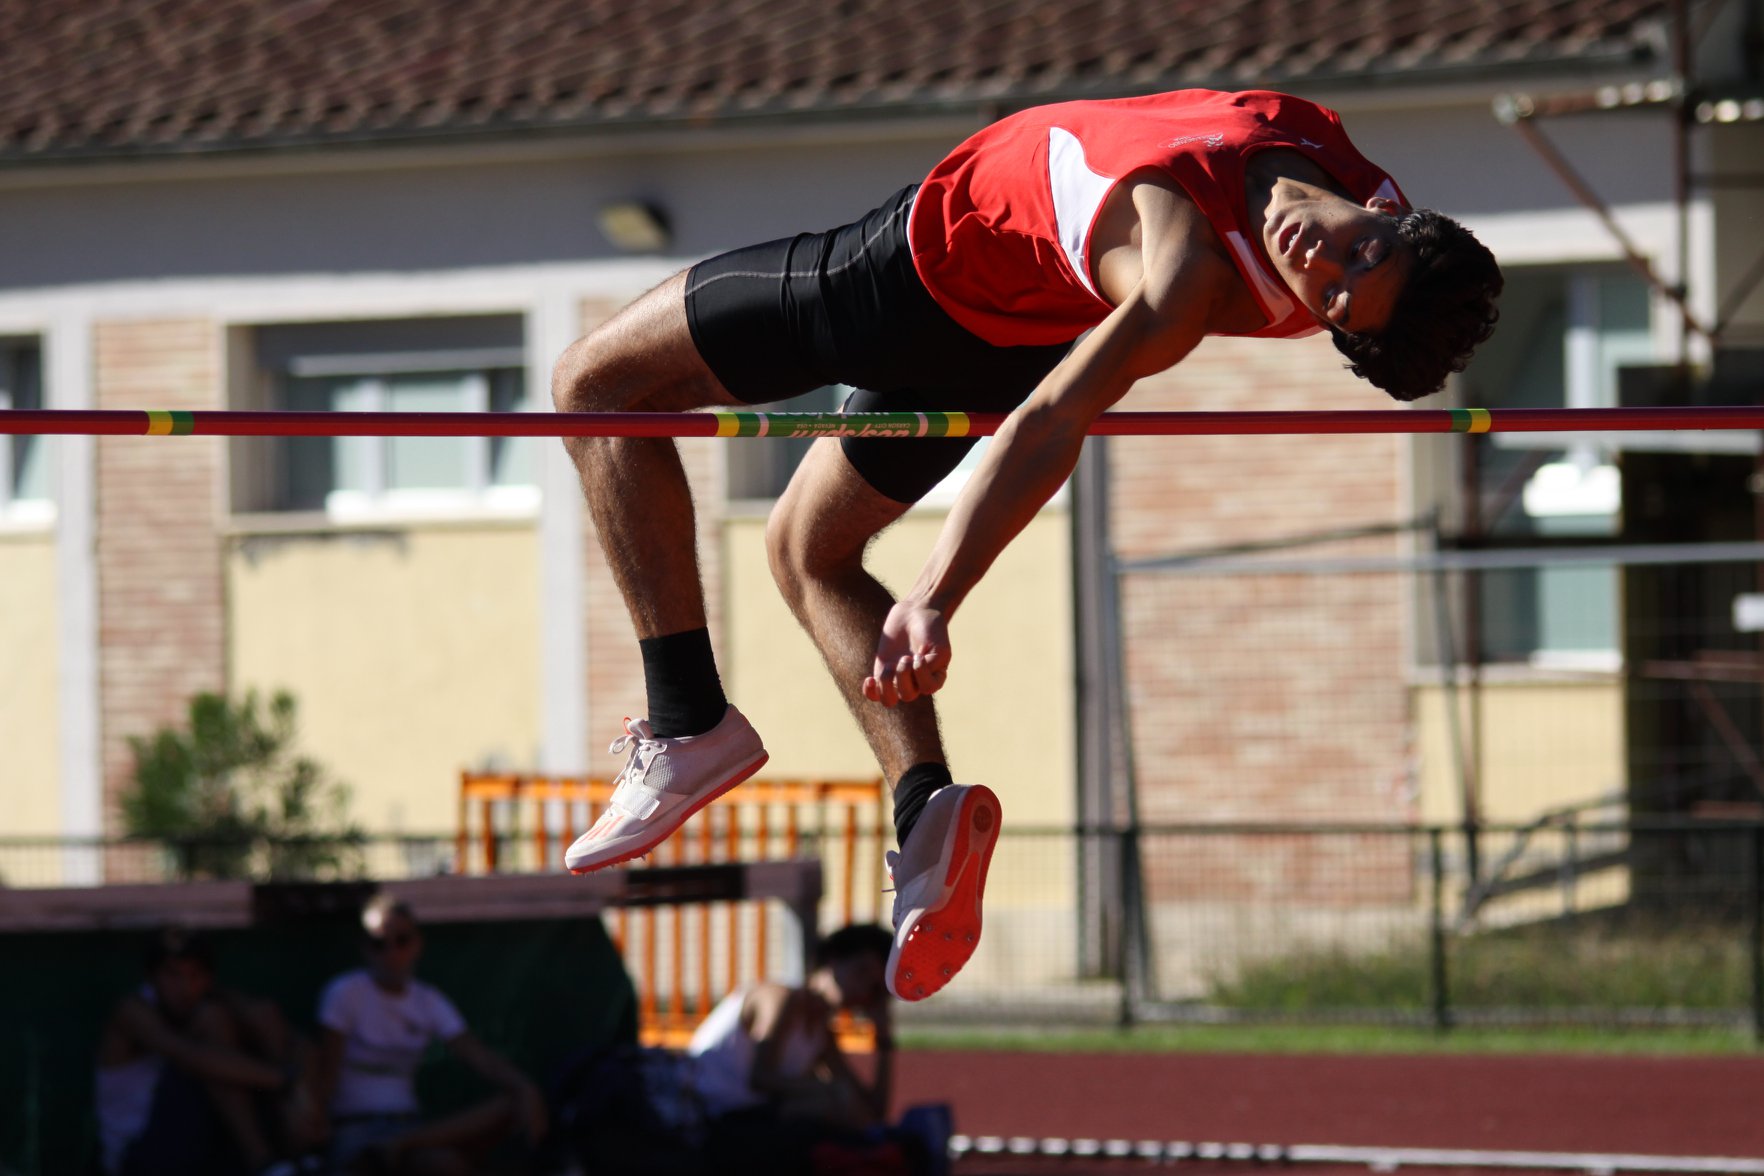 atletica-Leonardo-ceccarelli-salto-in-alto